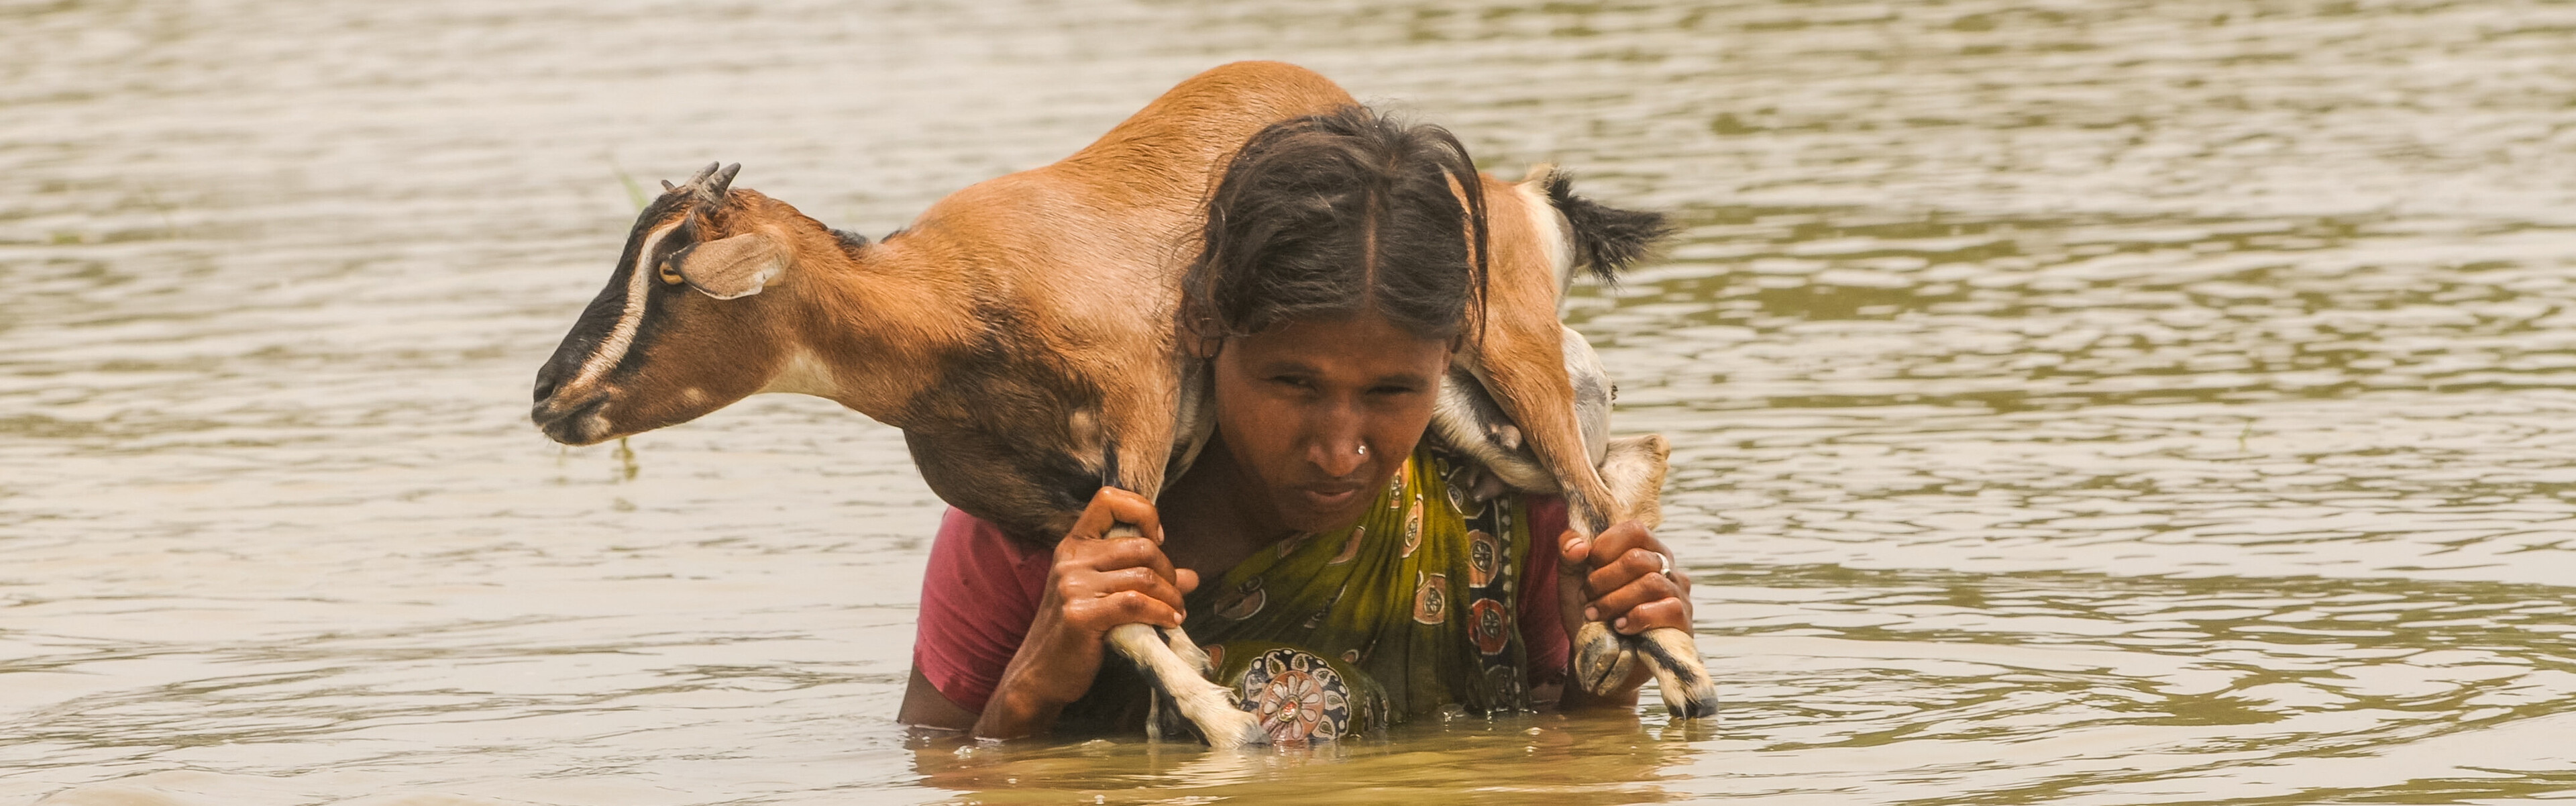 Eine Frau trägt eine Ziege durch das Wasser. Sie ist eine Betroffene des Monsuns in Indien.